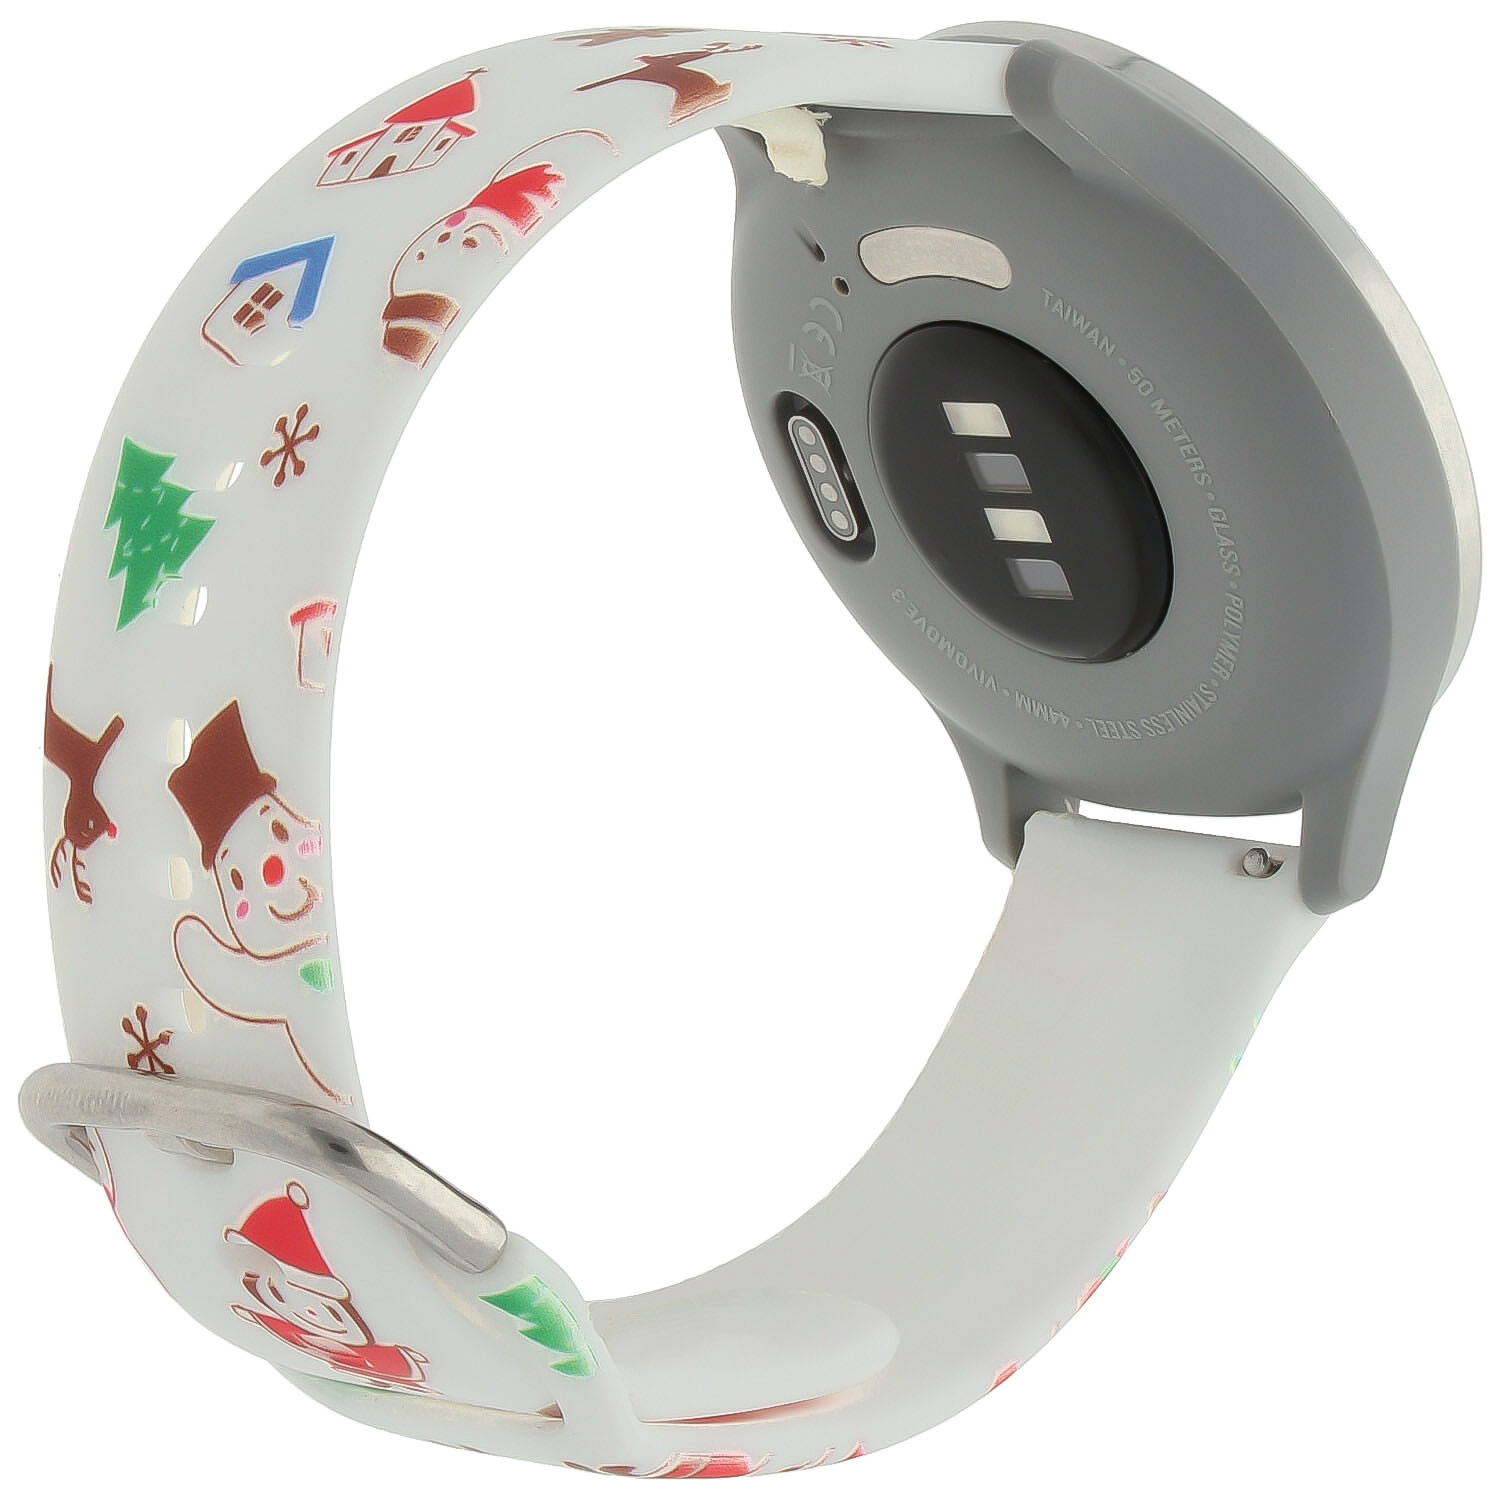 Samsung Galaxy Watch druck Sportarmband - Weihnachten Schneemann weiß